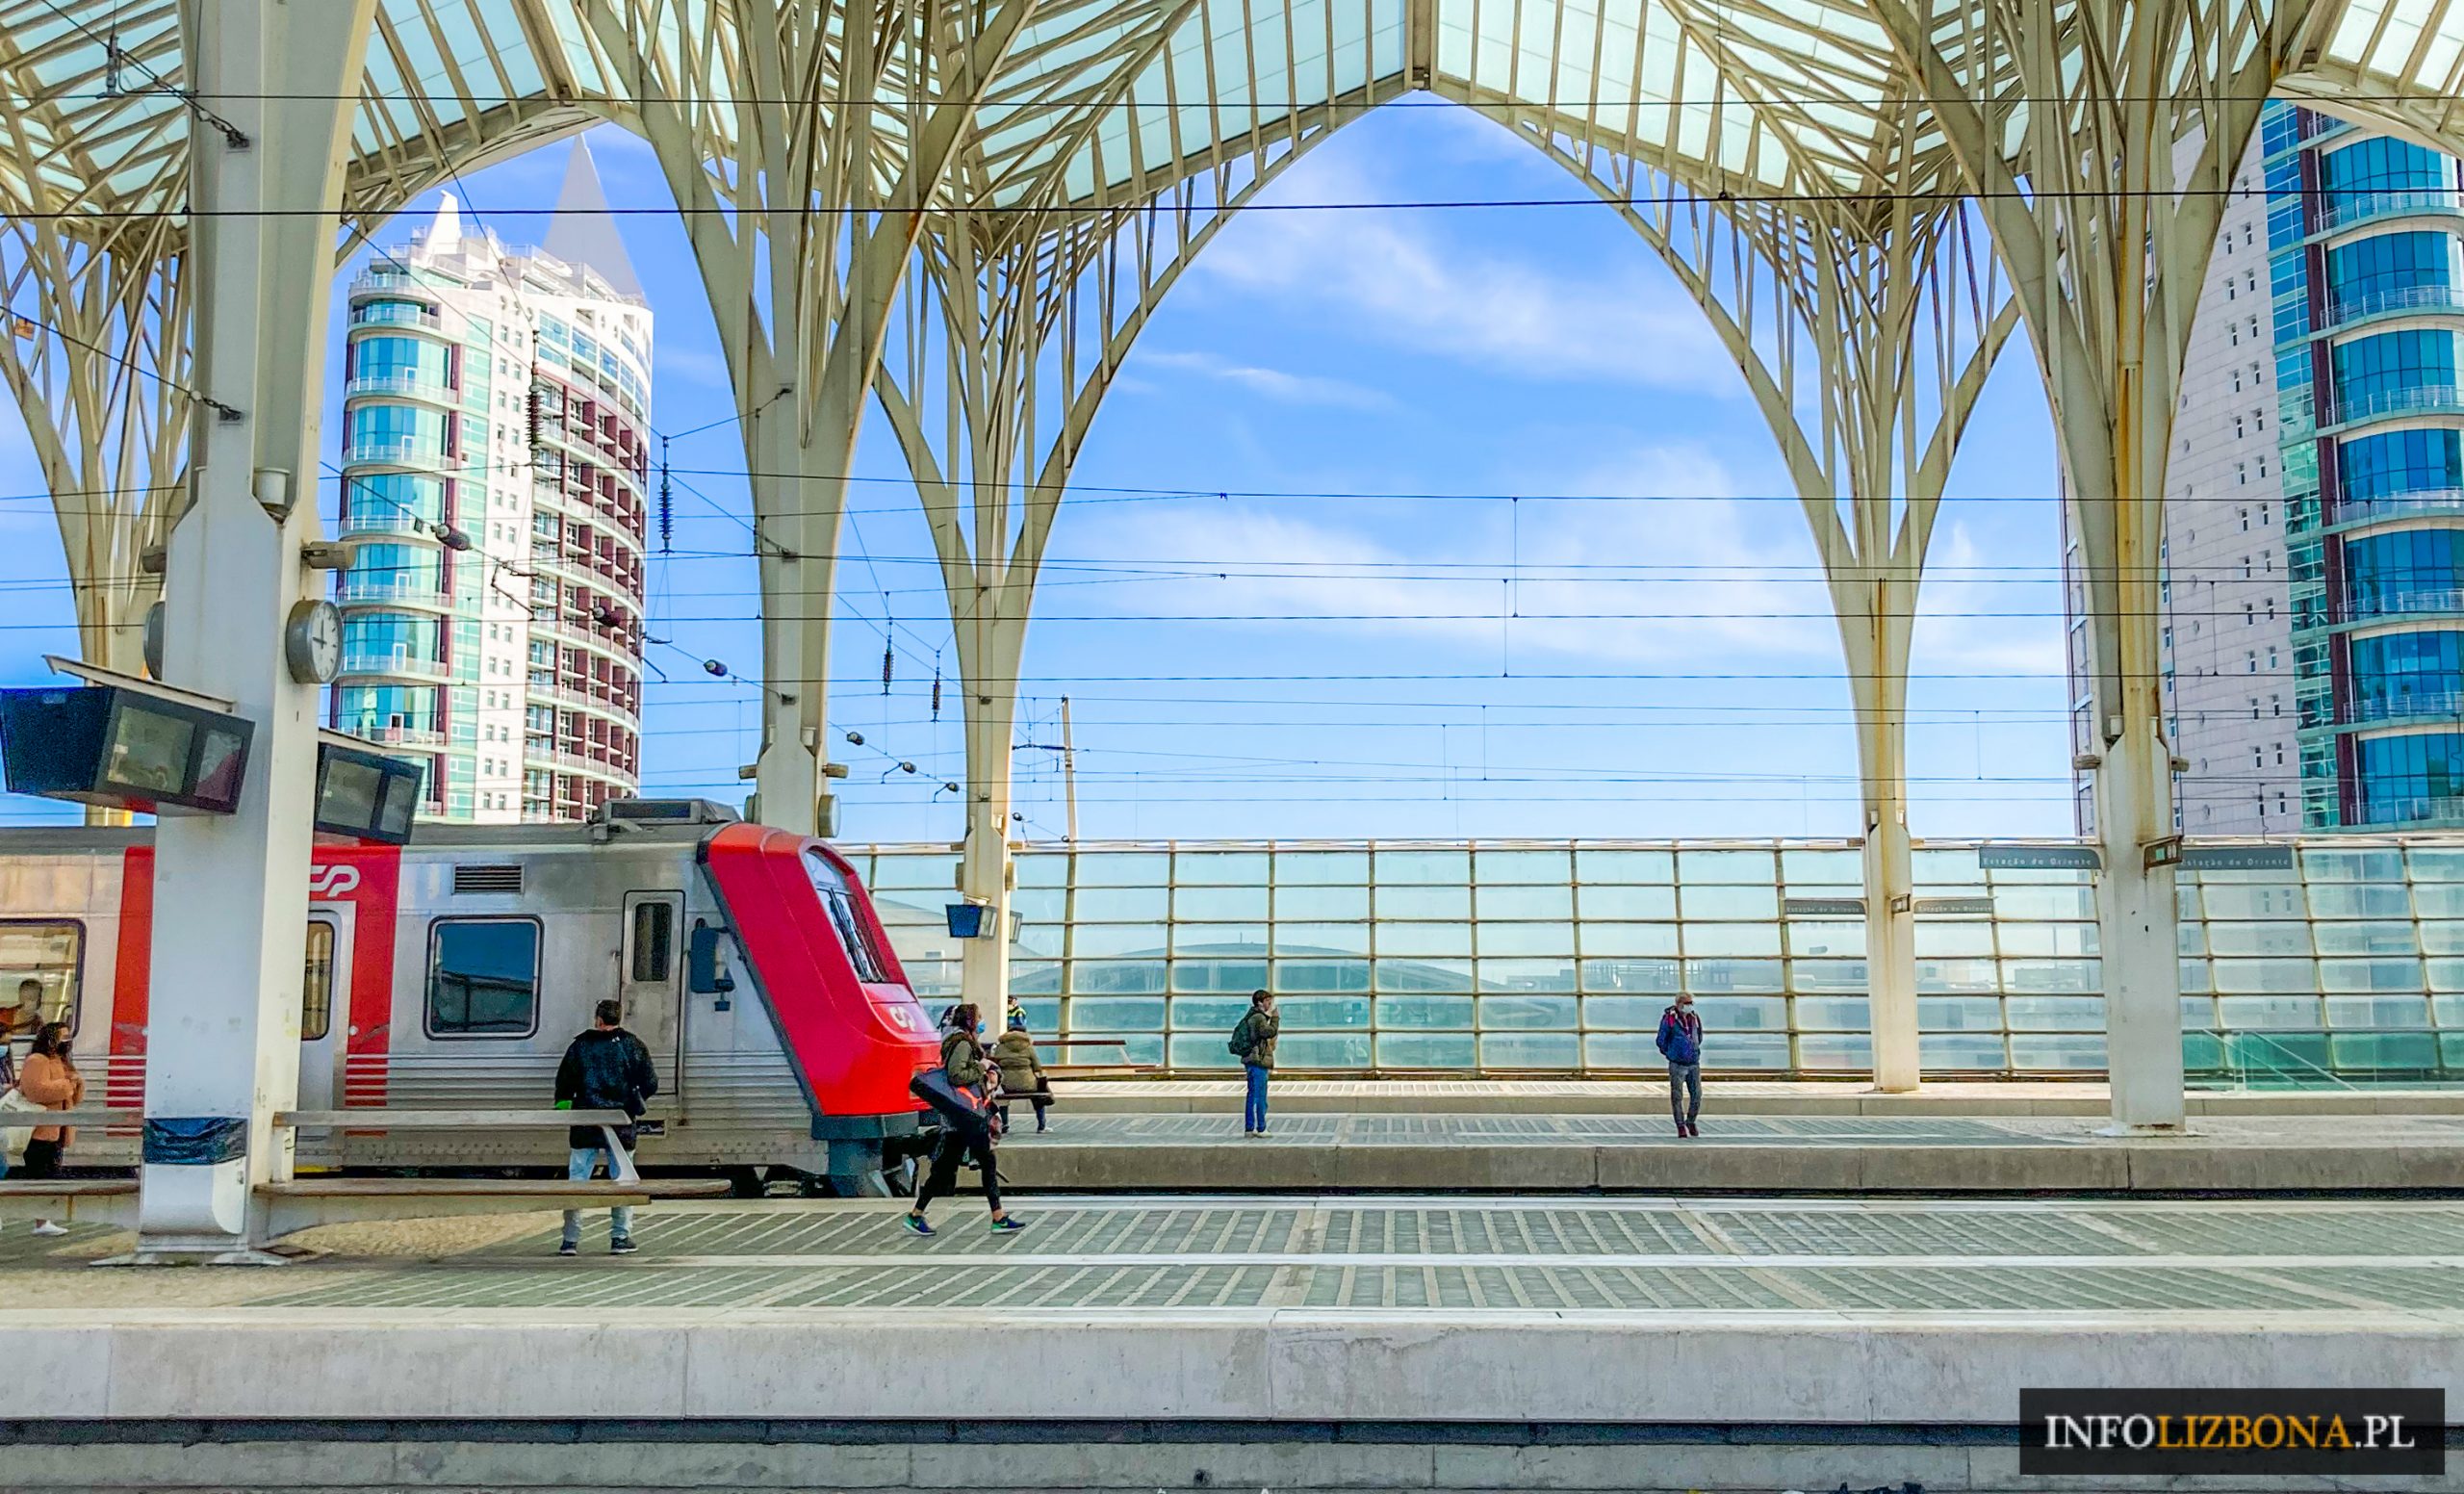 Lizbona Jak Kupić Bilet na Metro Tramwaj Komunikacja Miejska Publiczna w Lizbonie Lizbonie Transport Publiczny Miejski Bilety Cena Opłaty Działania Instrukcja 2022 Portugalia Opis